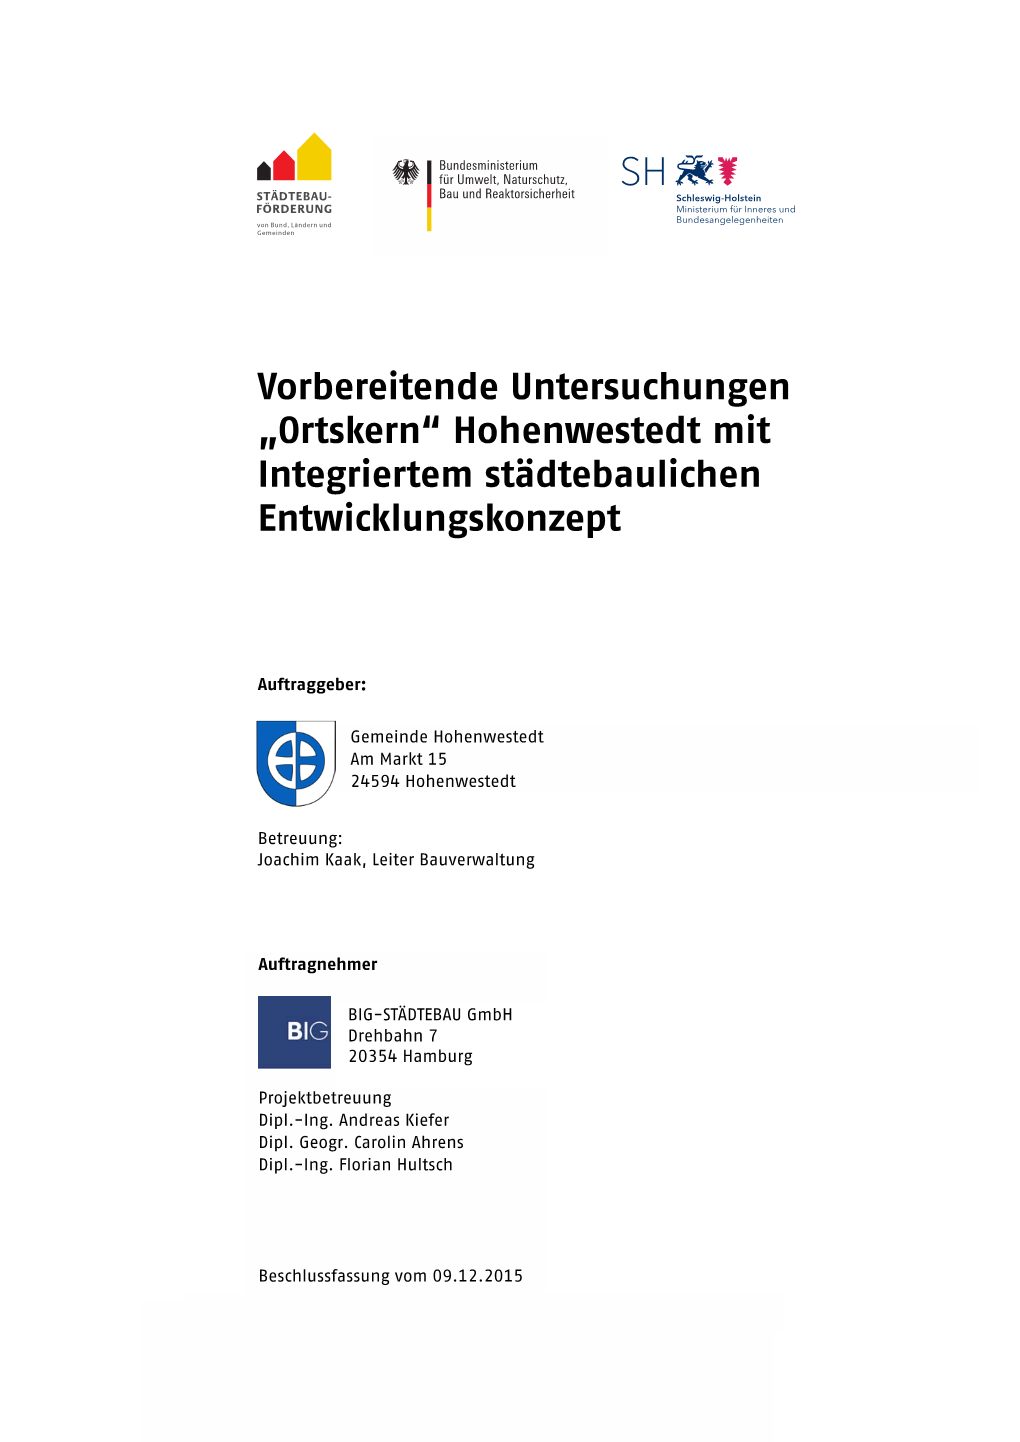 Vorbereitende Untersuchungen „Ortskern“ Hohenwestedt Mit Integriertem Städtebaulichen Entwicklungskonzept